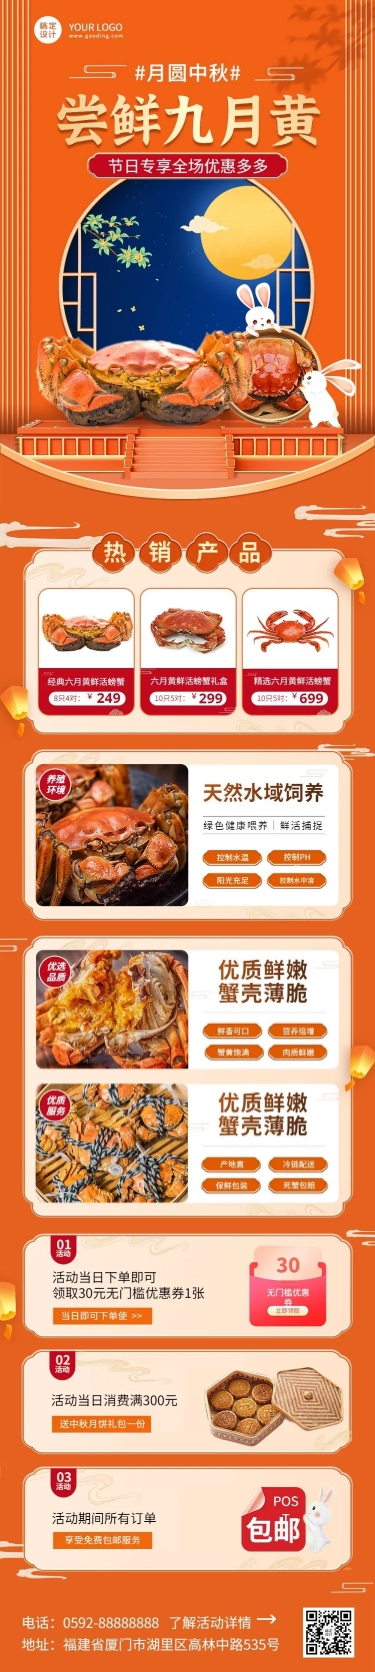 中秋节餐饮美食海鲜节日营销文章长图预览效果